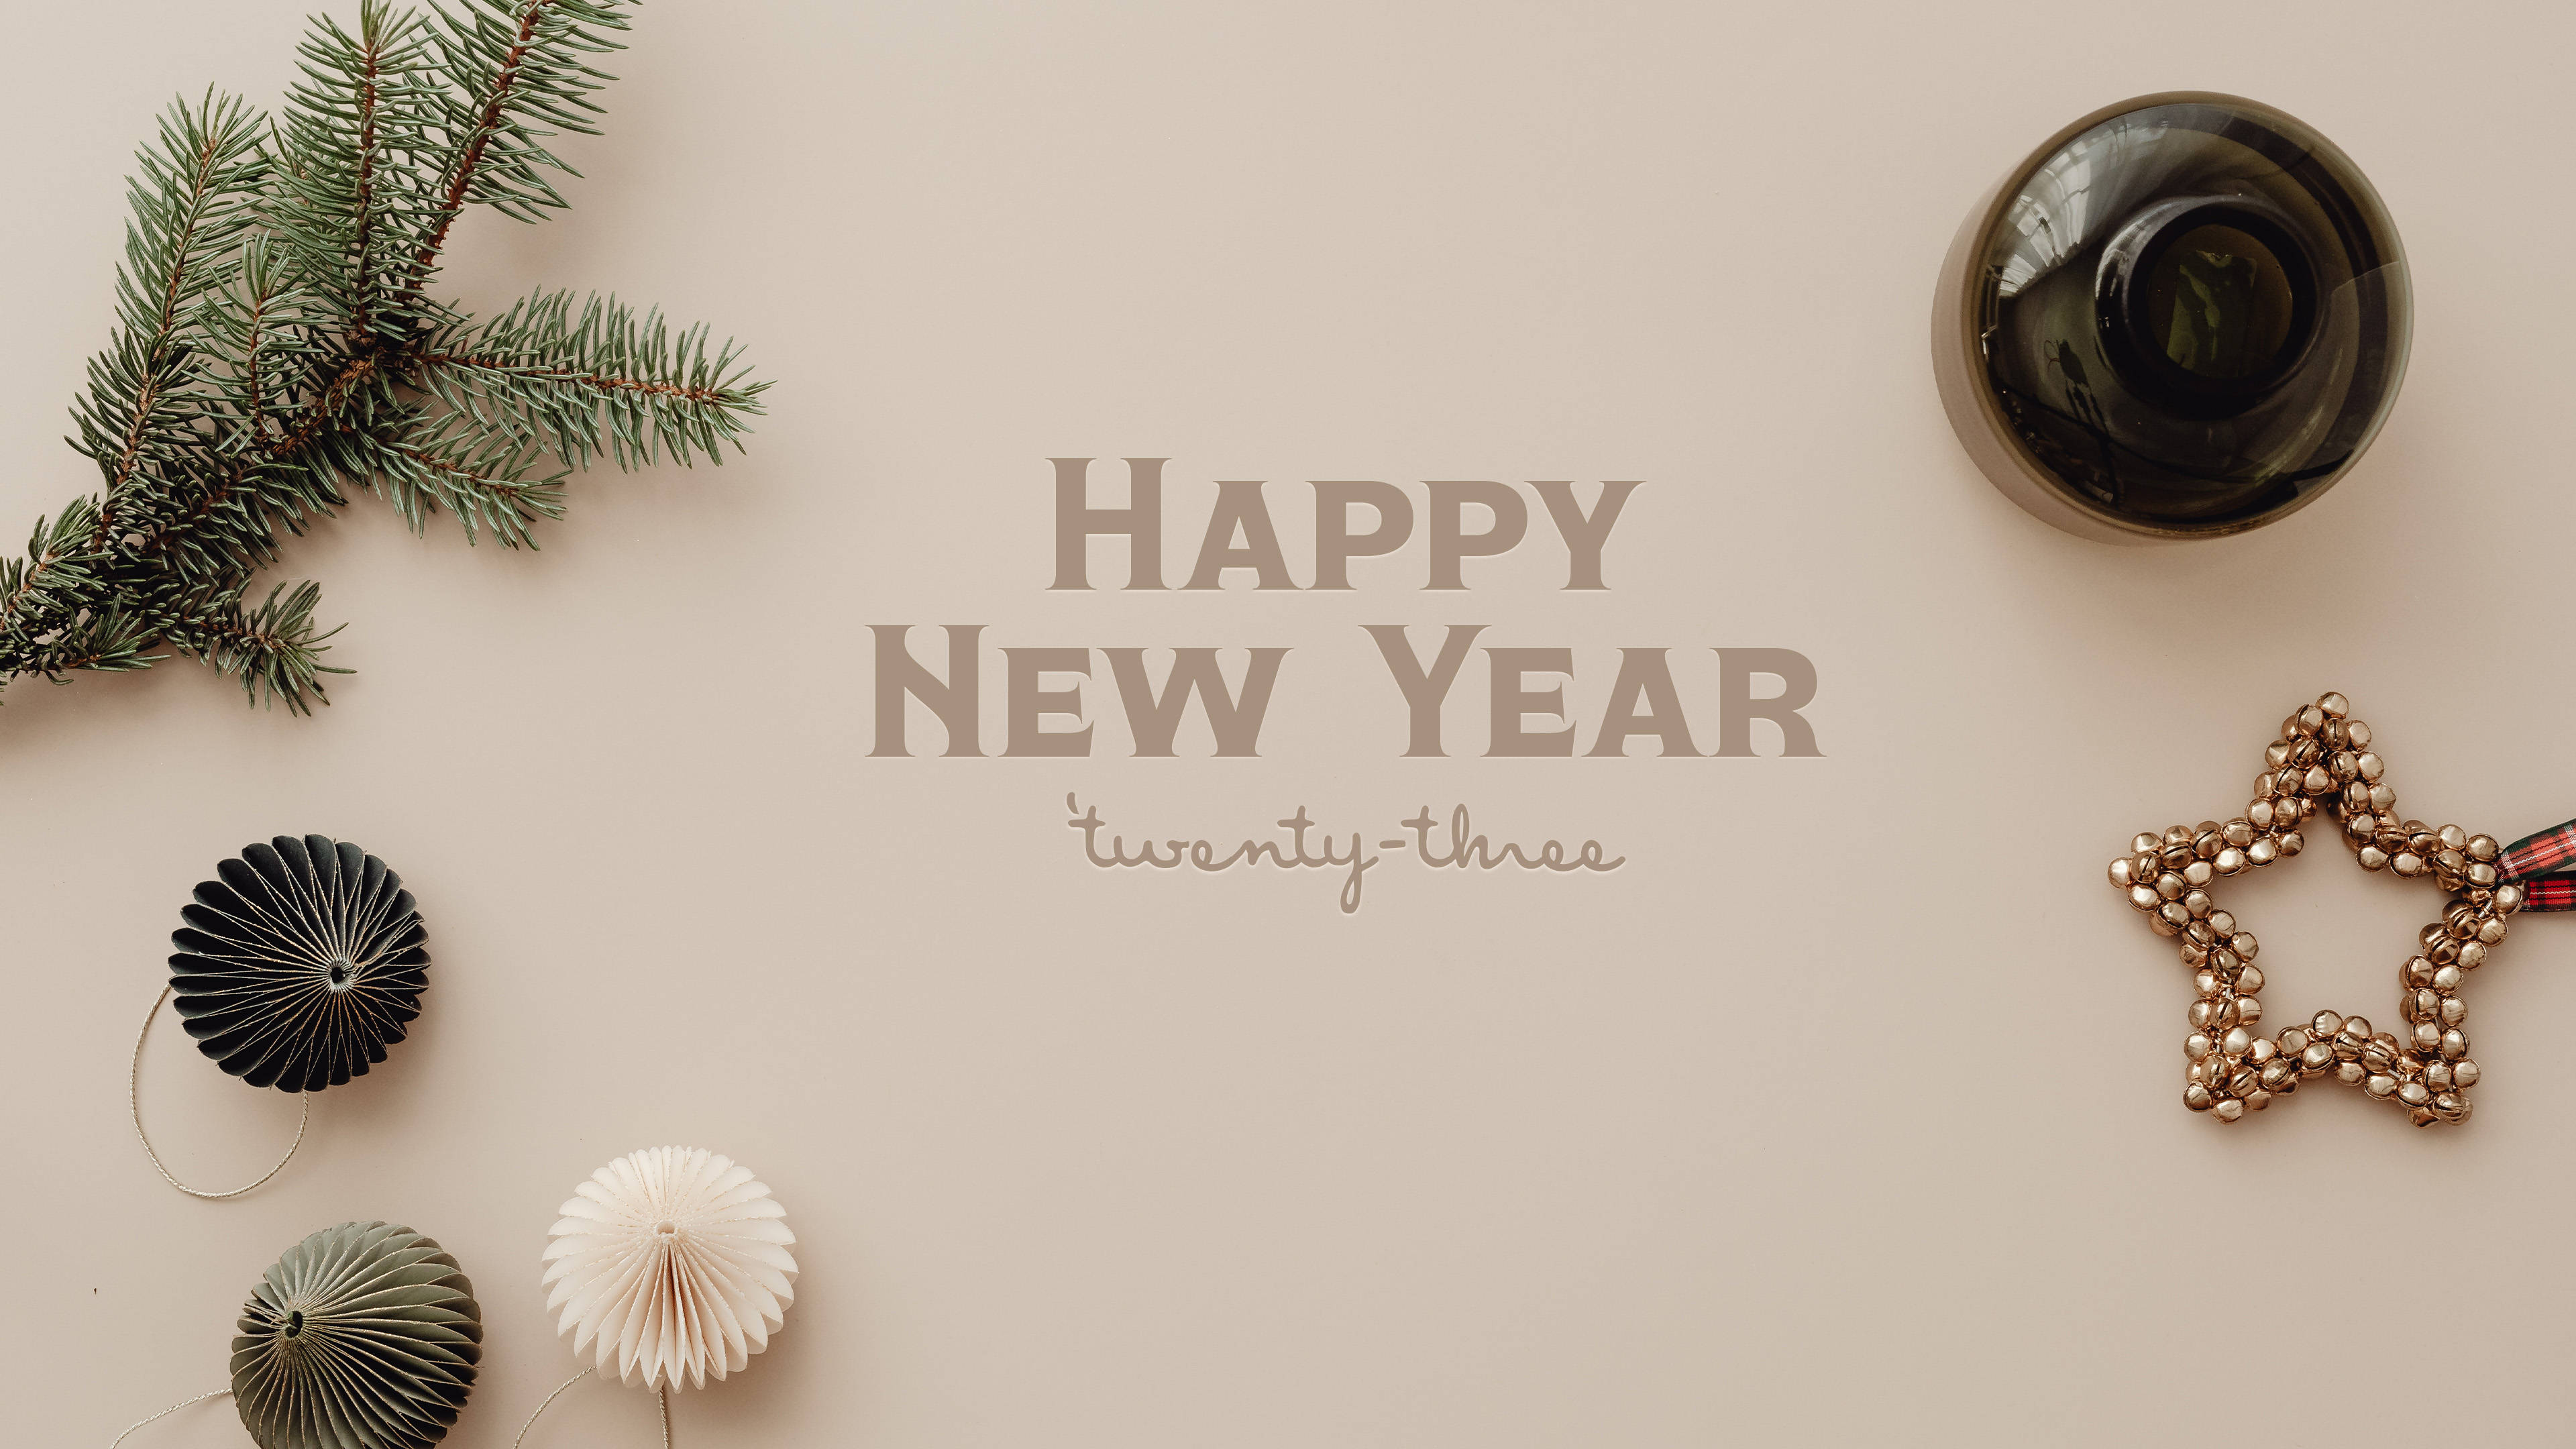 Chúc mừng năm mới (Happy New Year): Hãy cùng chúc mừng và chia sẻ niềm vui của một năm mới đầy hứa hẹn. Hình ảnh những người thân yêu cùng nhau tận hưởng không khí Tết và lời chúc tốt đẹp sẽ khiến bạn cảm thấy tràn đầy hy vọng và cảm giác mới mẻ.